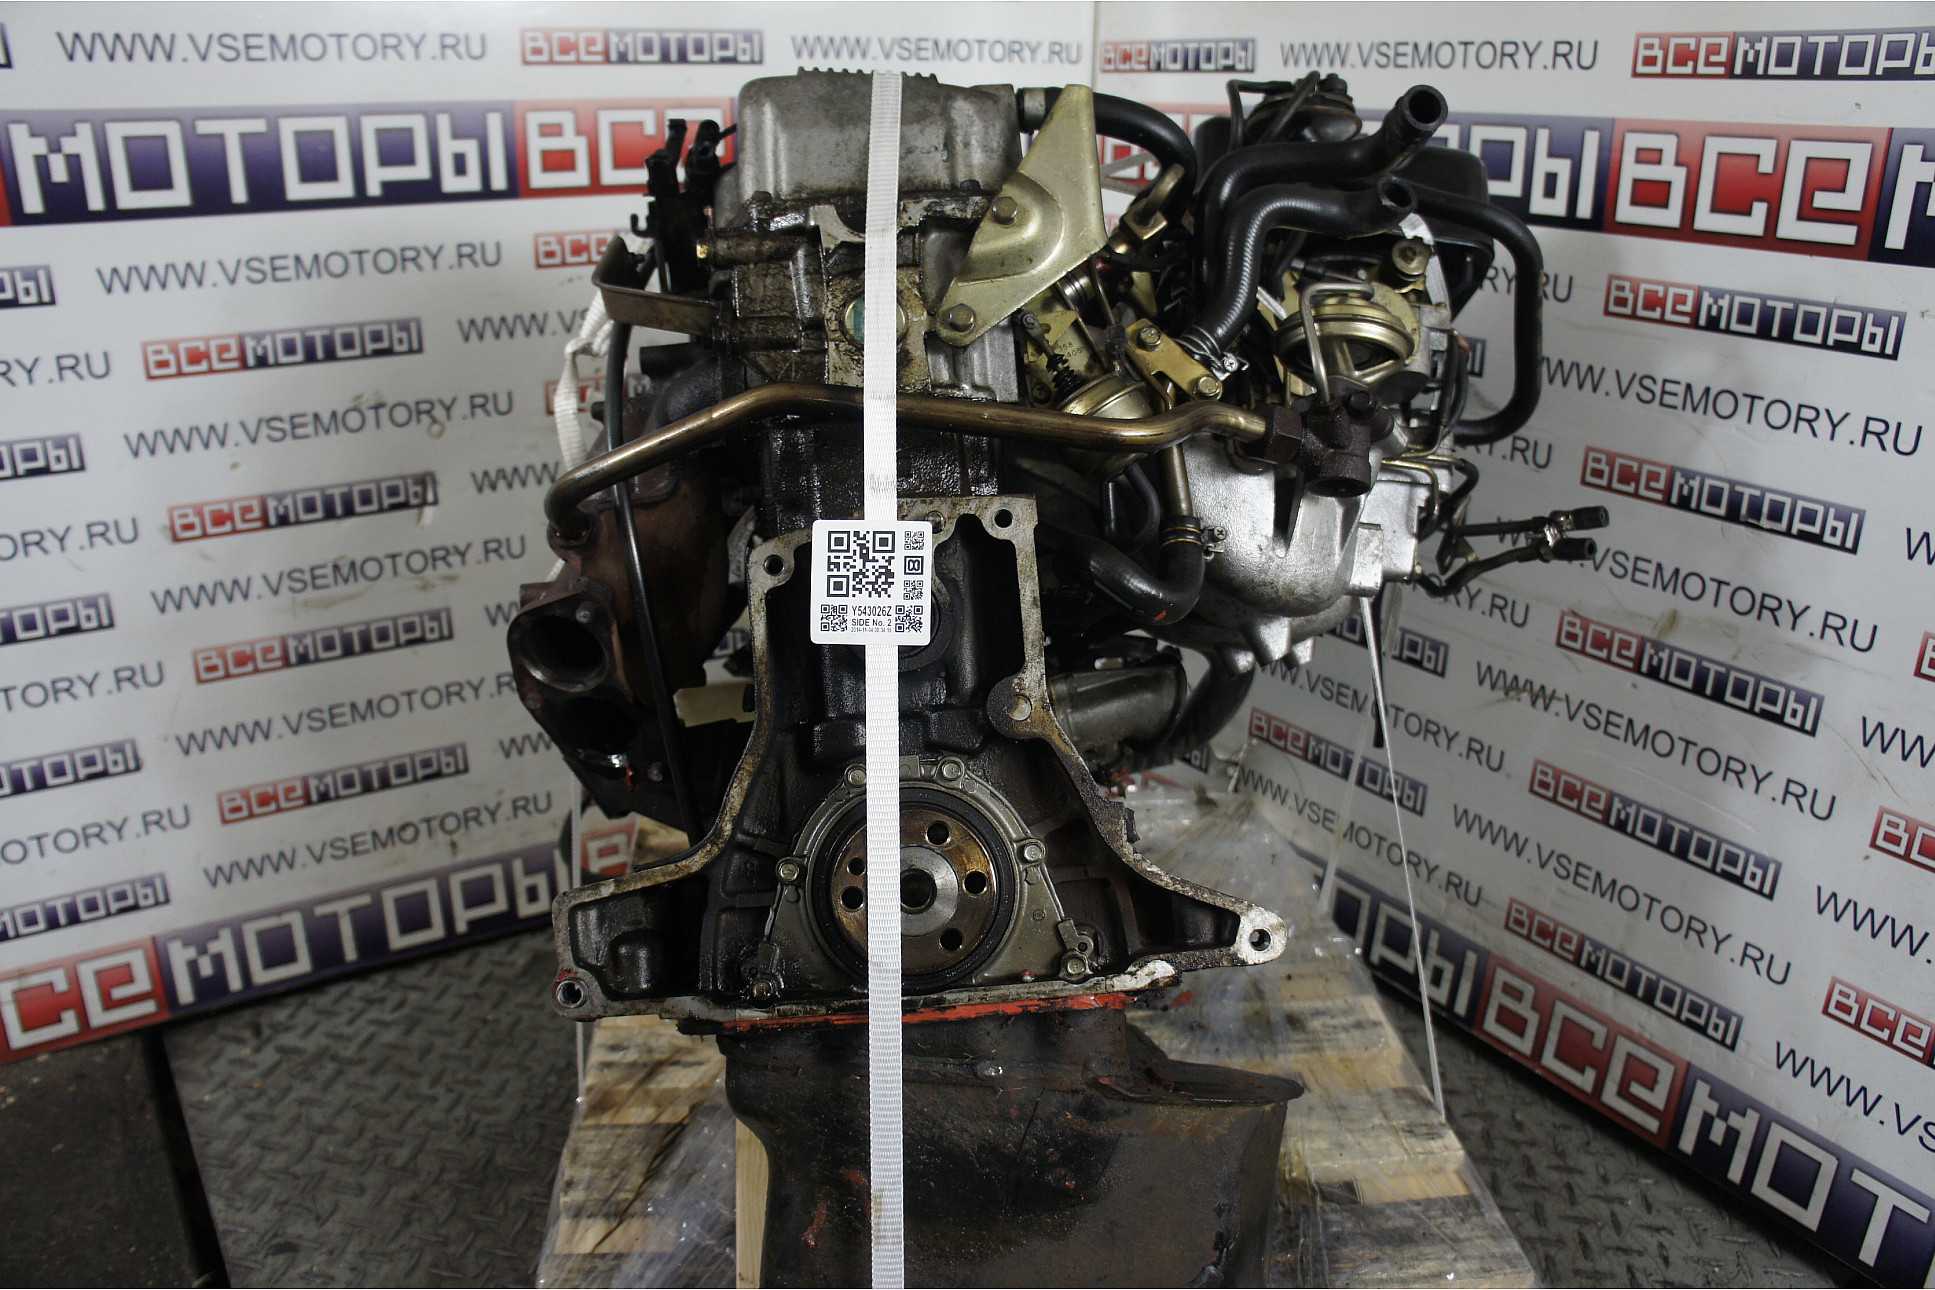 Двигатель k24a honda, acura, технические характеристики, какое масло лить, ремонт двигателя k24a, доработки и тюнинг, схема устройства, рекомендации по обслуживанию